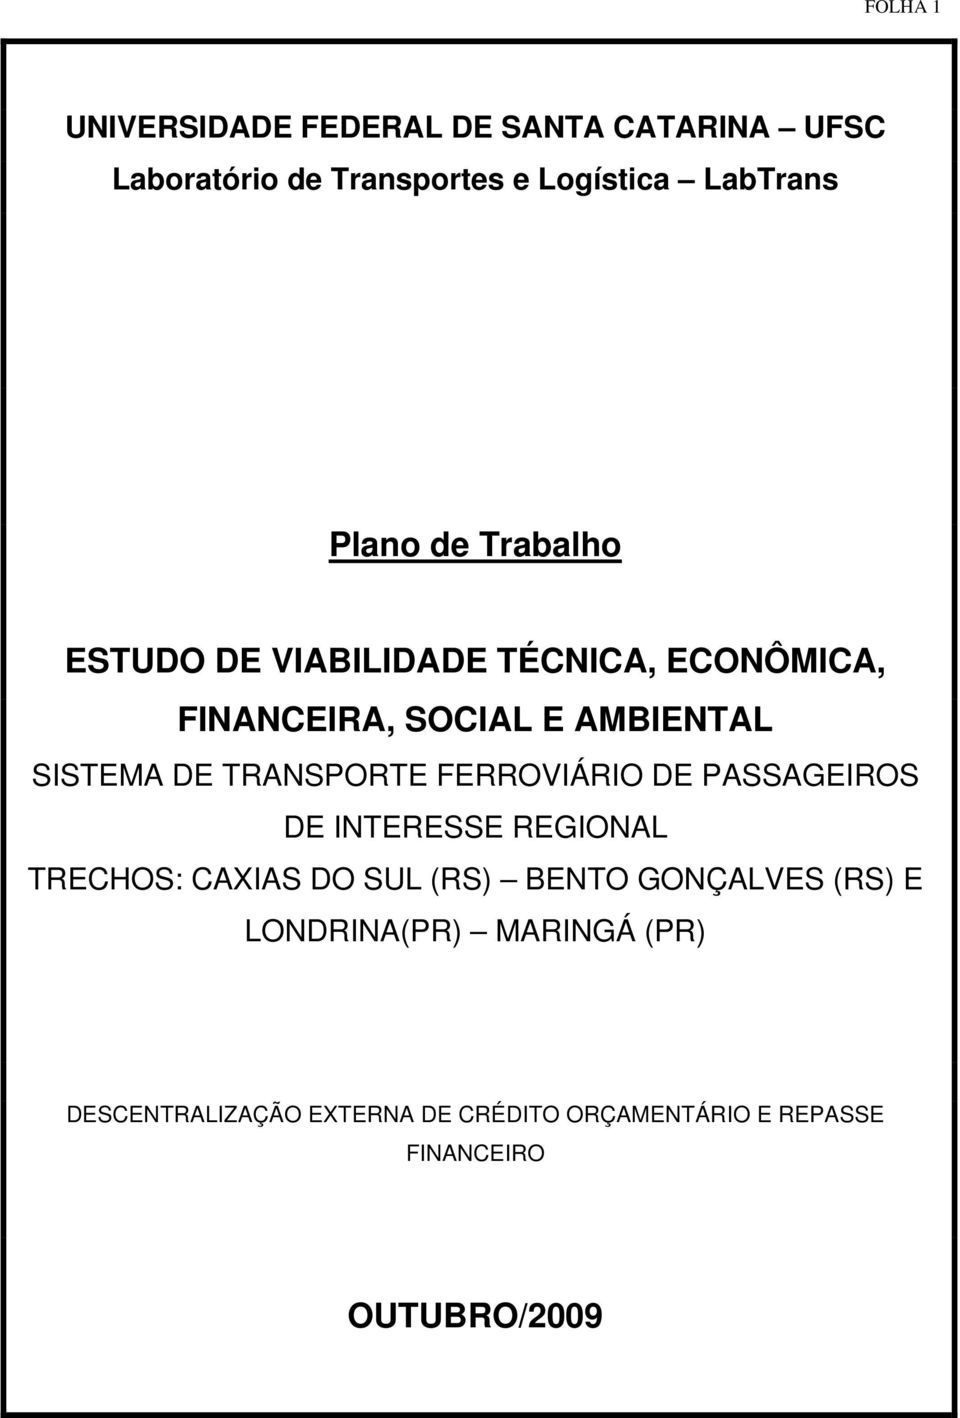 TRANSPORTE FERROVIÁRIO DE PASSAGEIROS DE INTERESSE REGIONAL TRECHOS: CAXIAS DO SUL (RS) BENTO GONÇALVES